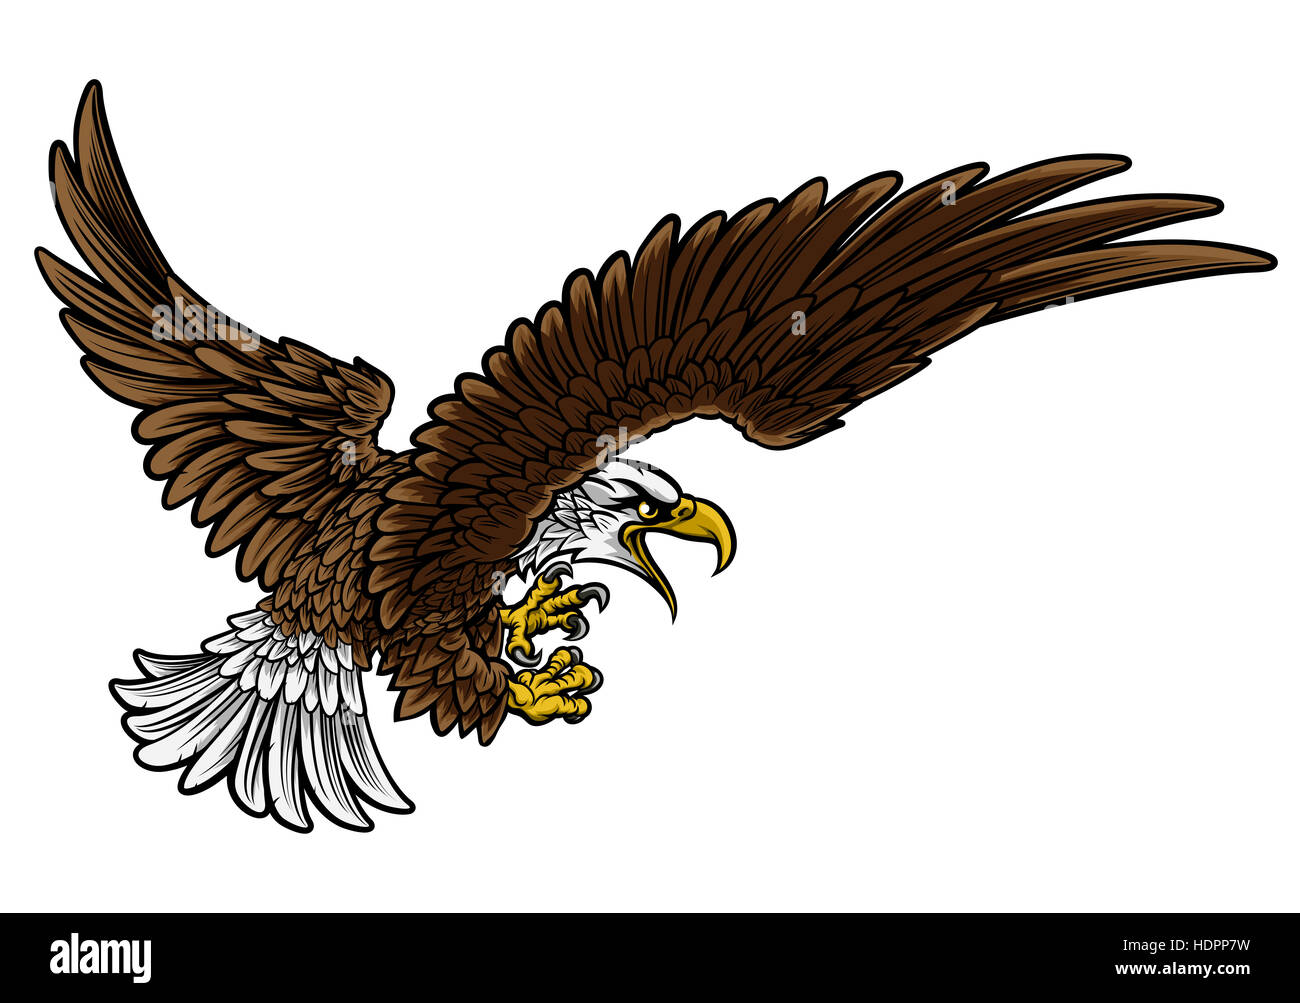 Eine Glatze oder American Eagle Sturzflug im Profil mit Klauen oder Krallen ausgestreckt Stockfoto